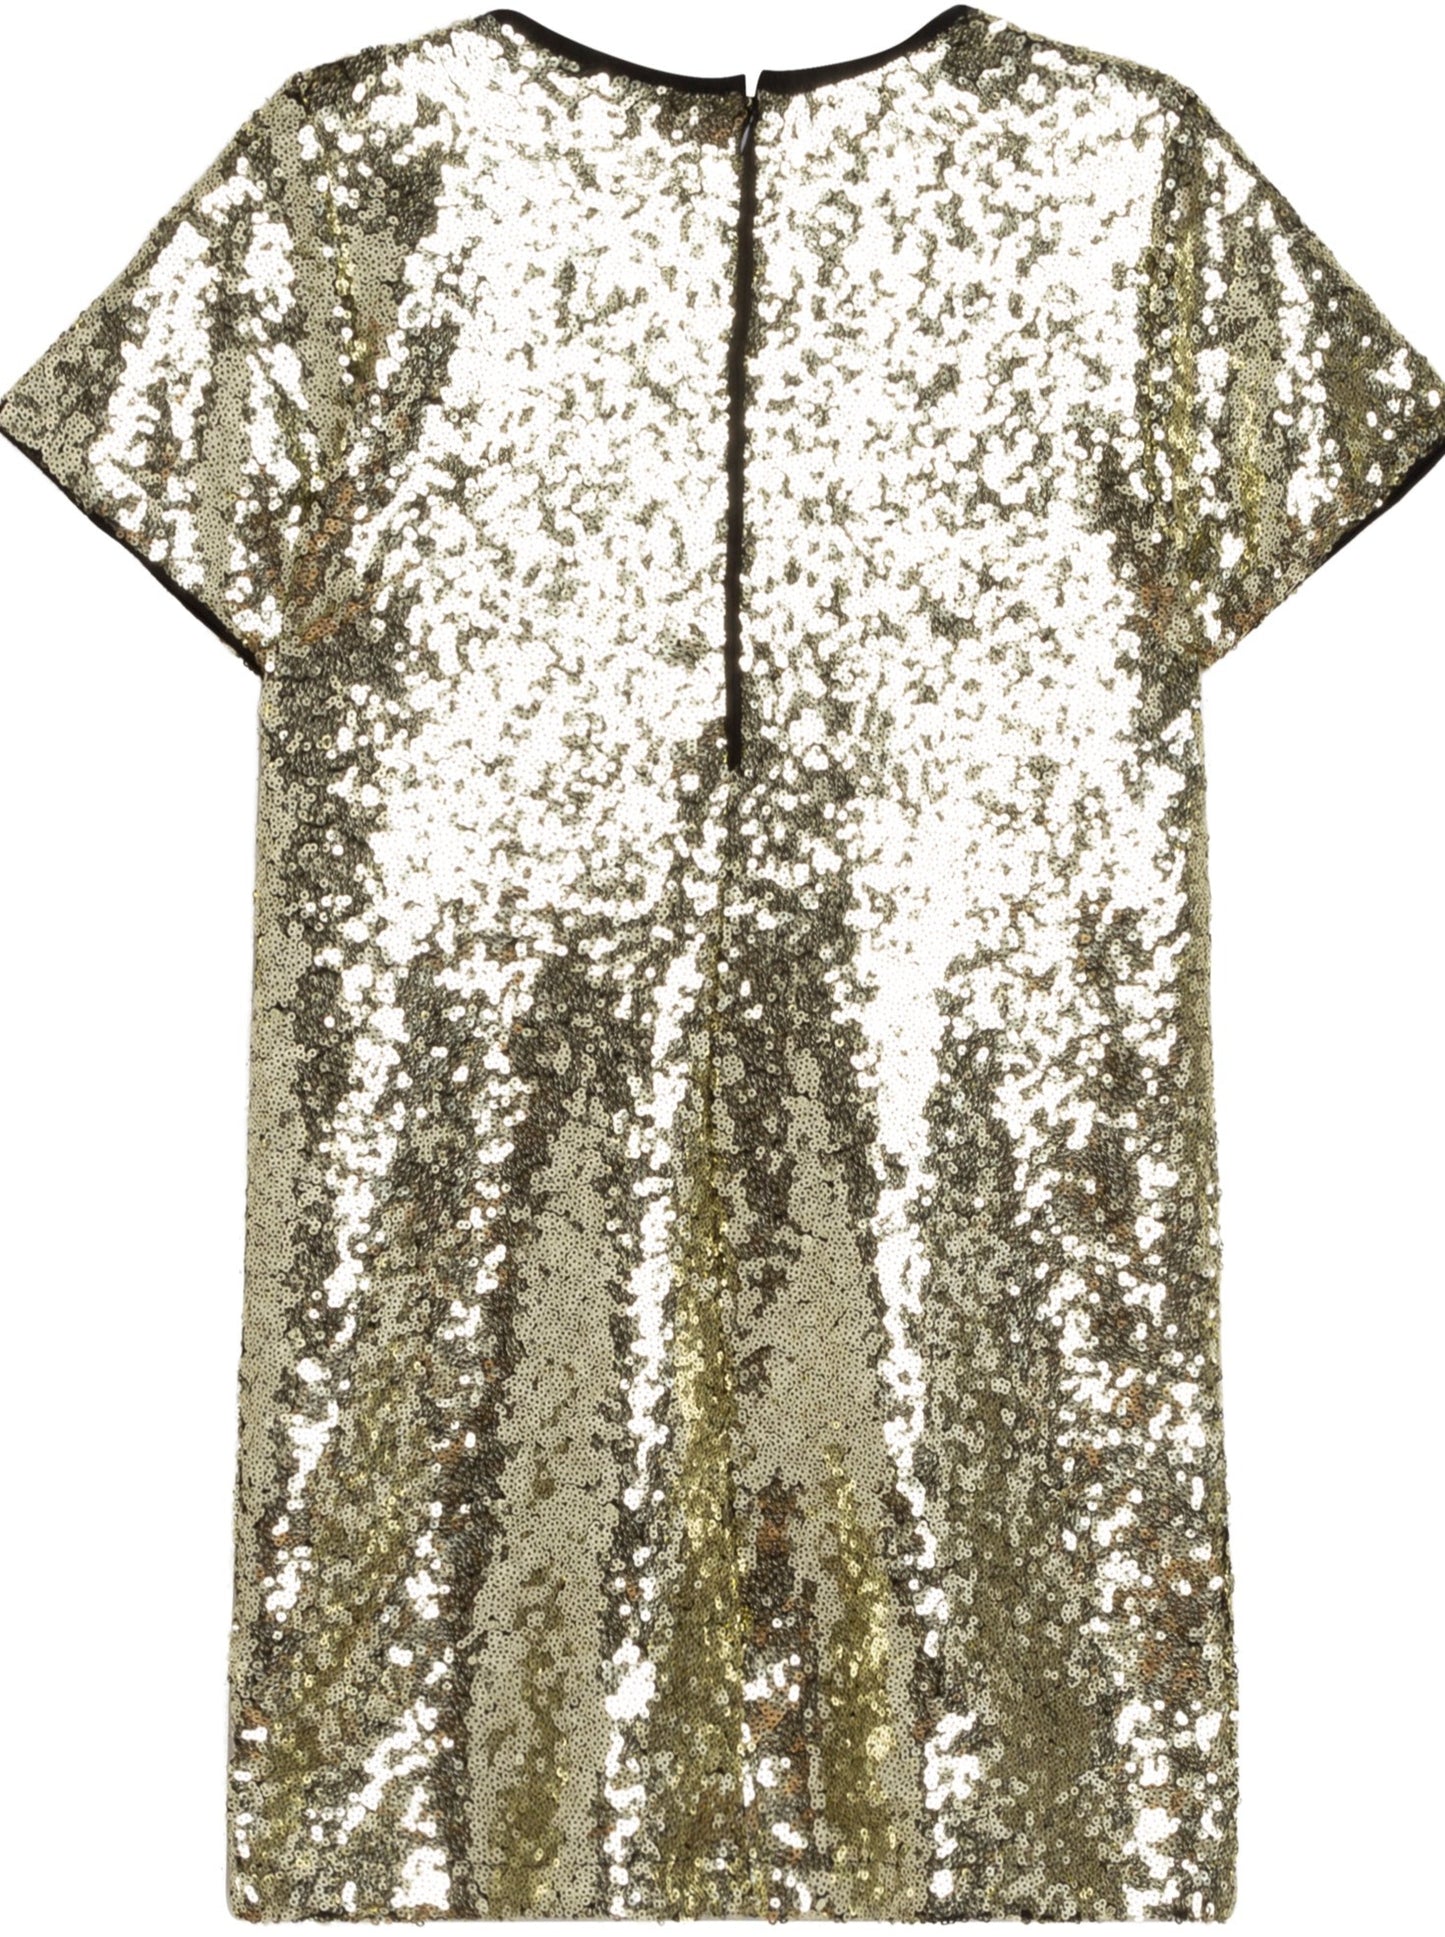 Michael Kors S/S Sequin T-Shirt Dress _Gold R12120-574